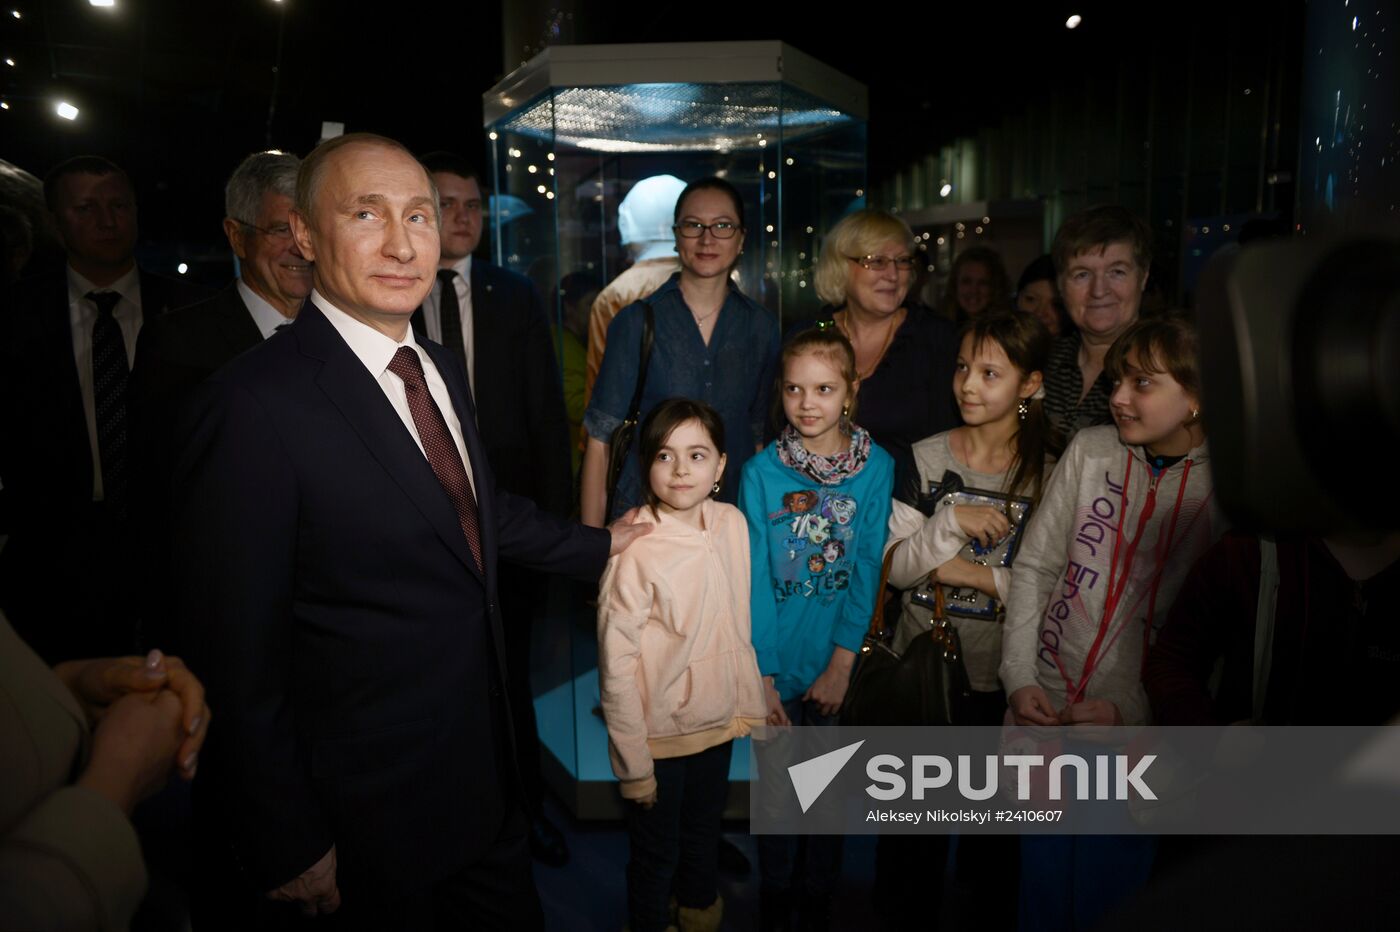 Vladimir Putin visits Memorial Museum of Cosmonautics